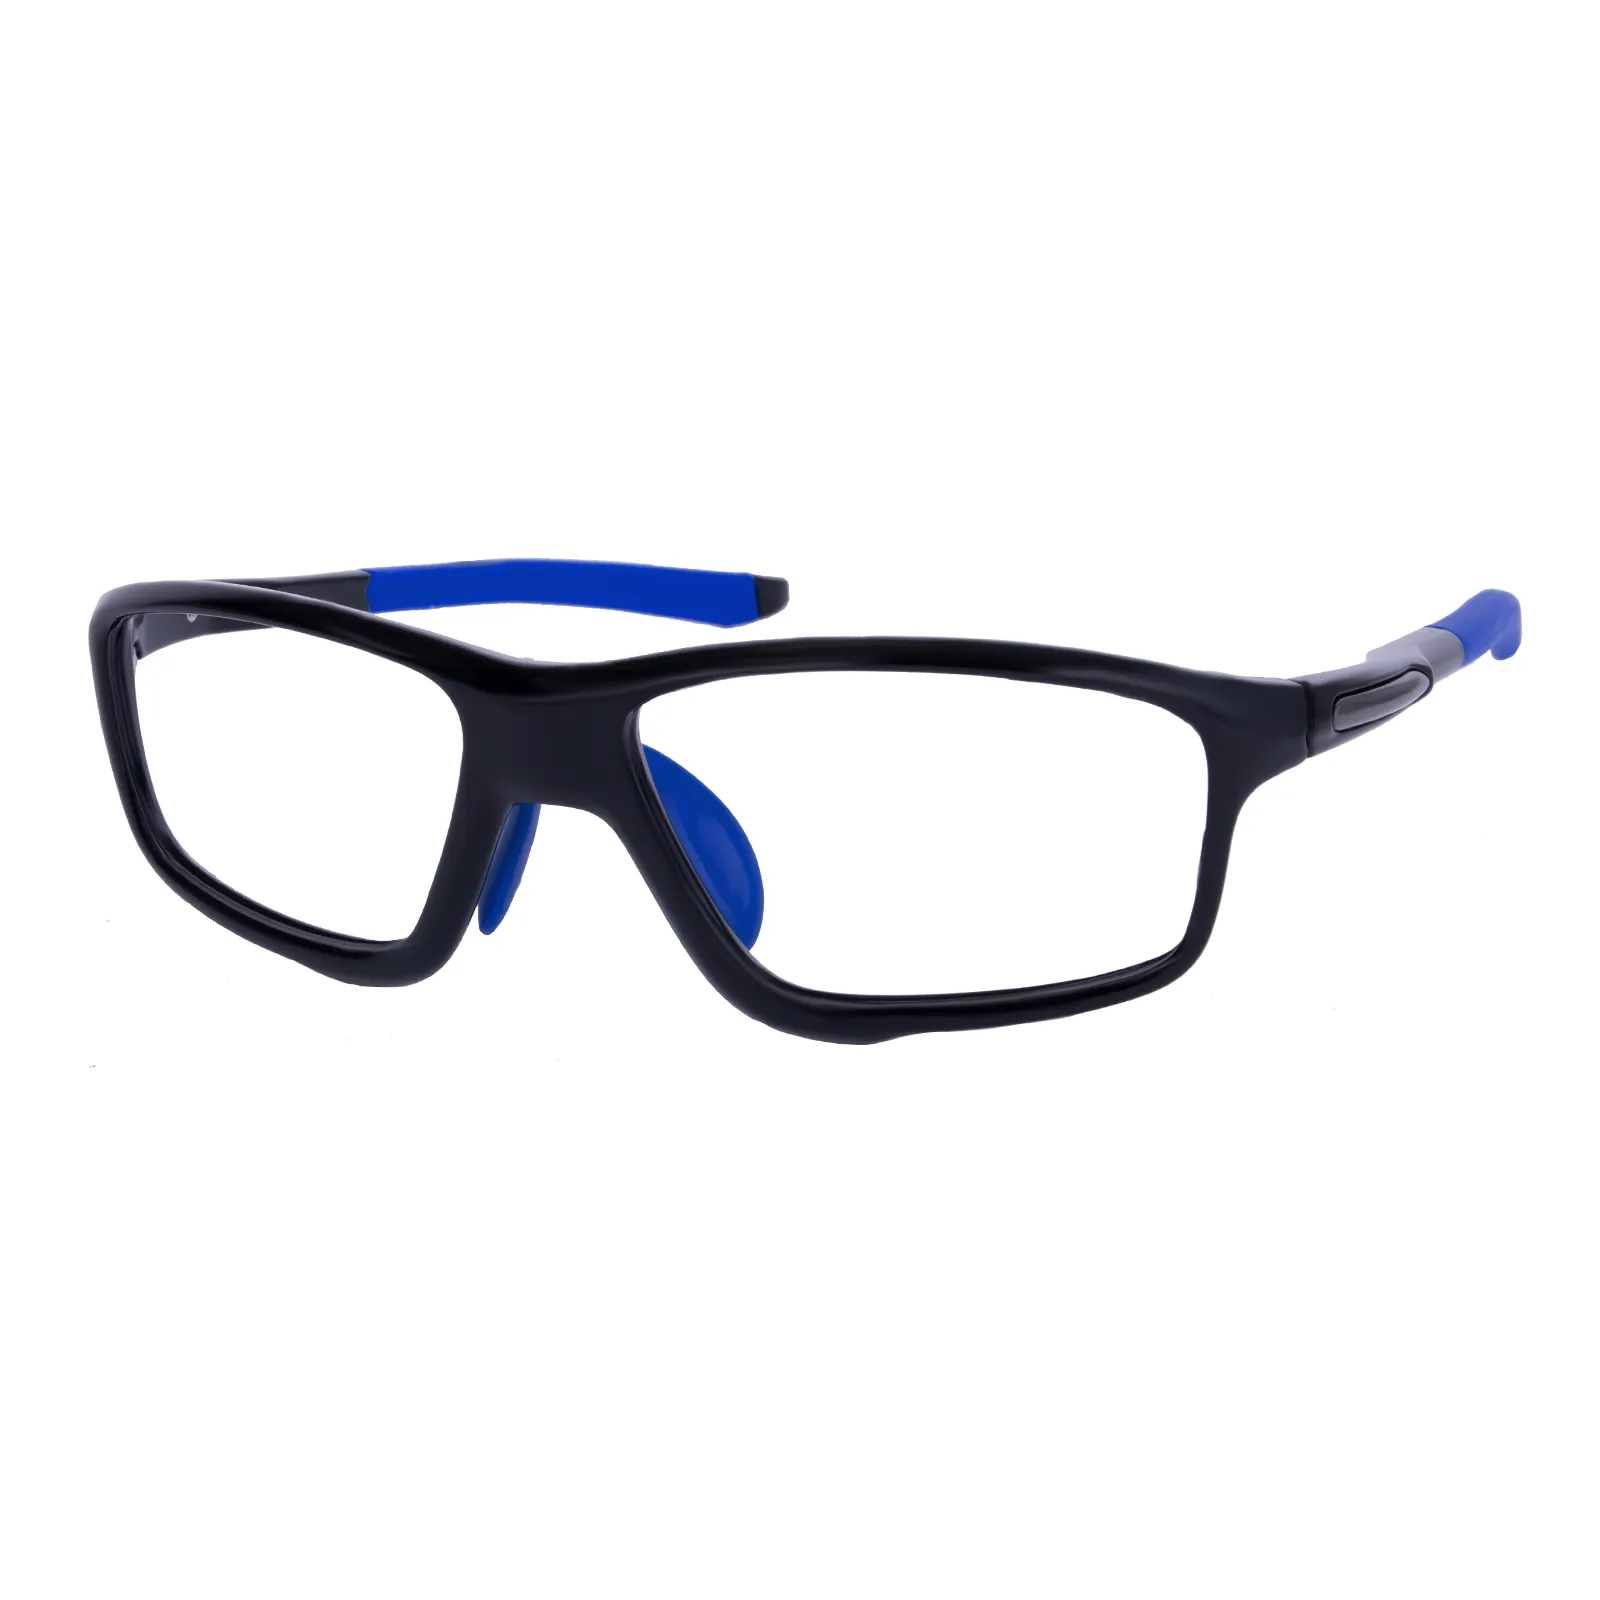 Locke - Square Black/Deep blue Glasses for Men & Women